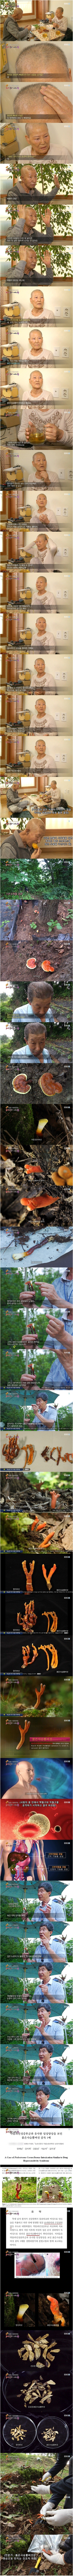 한국에서 서식하는 가장 위험한 독버섯.jpg